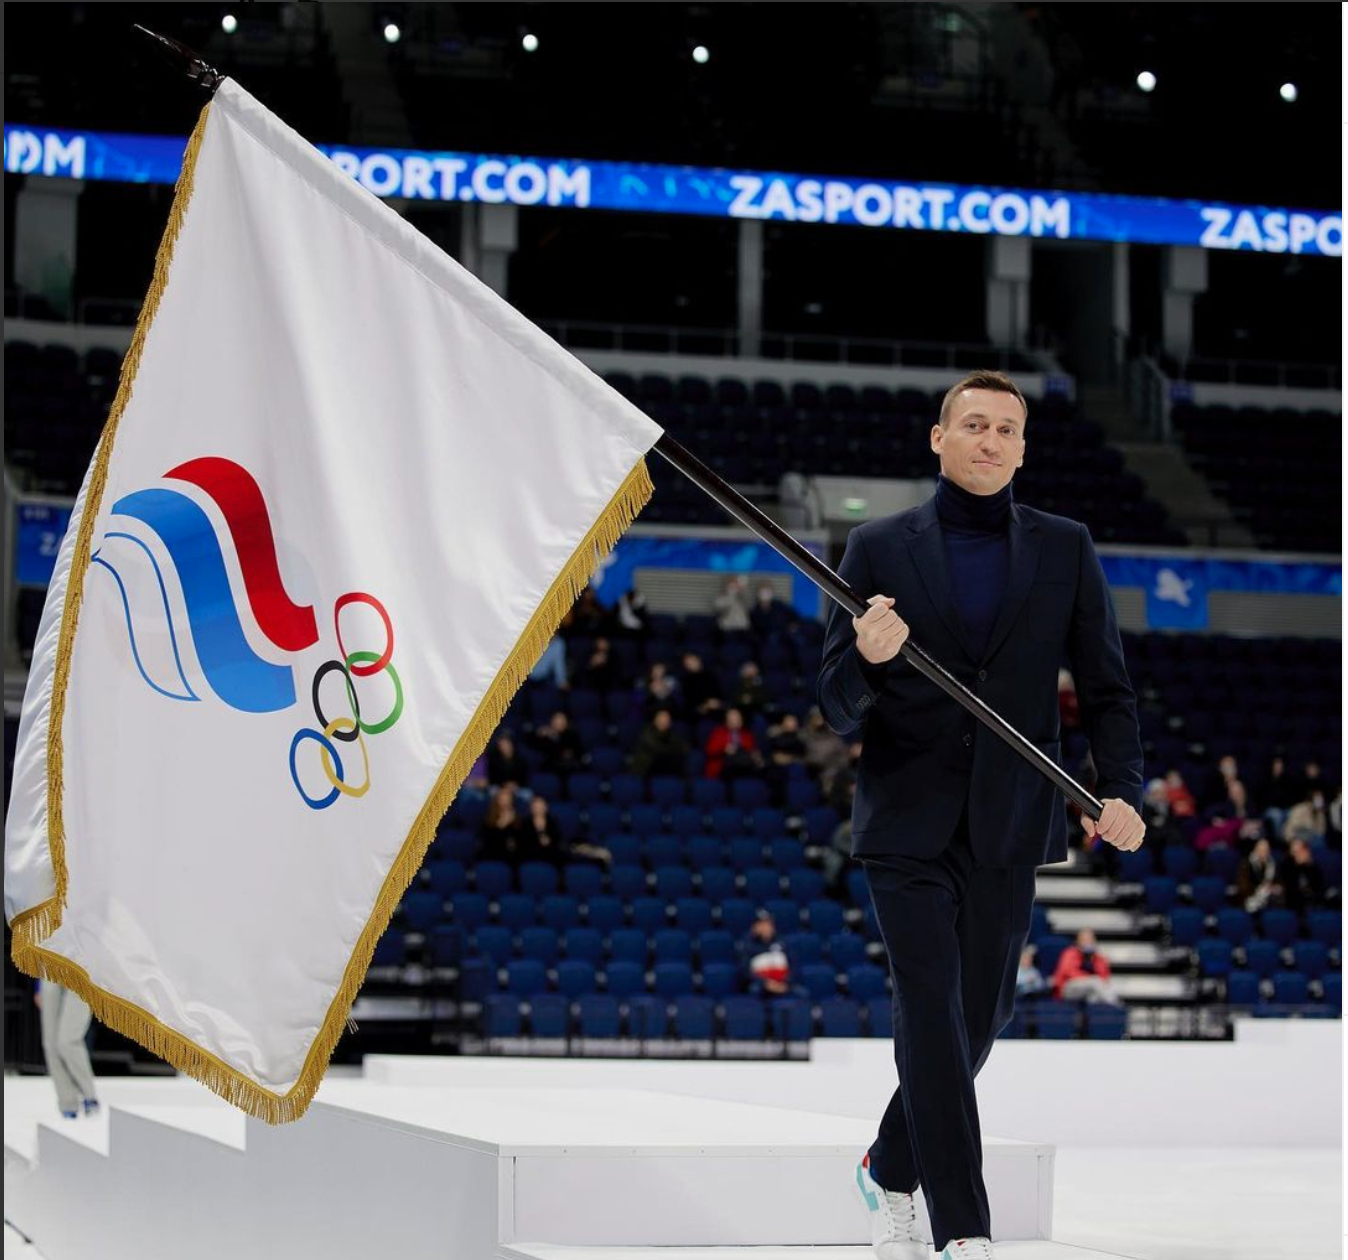 Названы знаменосцы сборной России на Олимпиаде